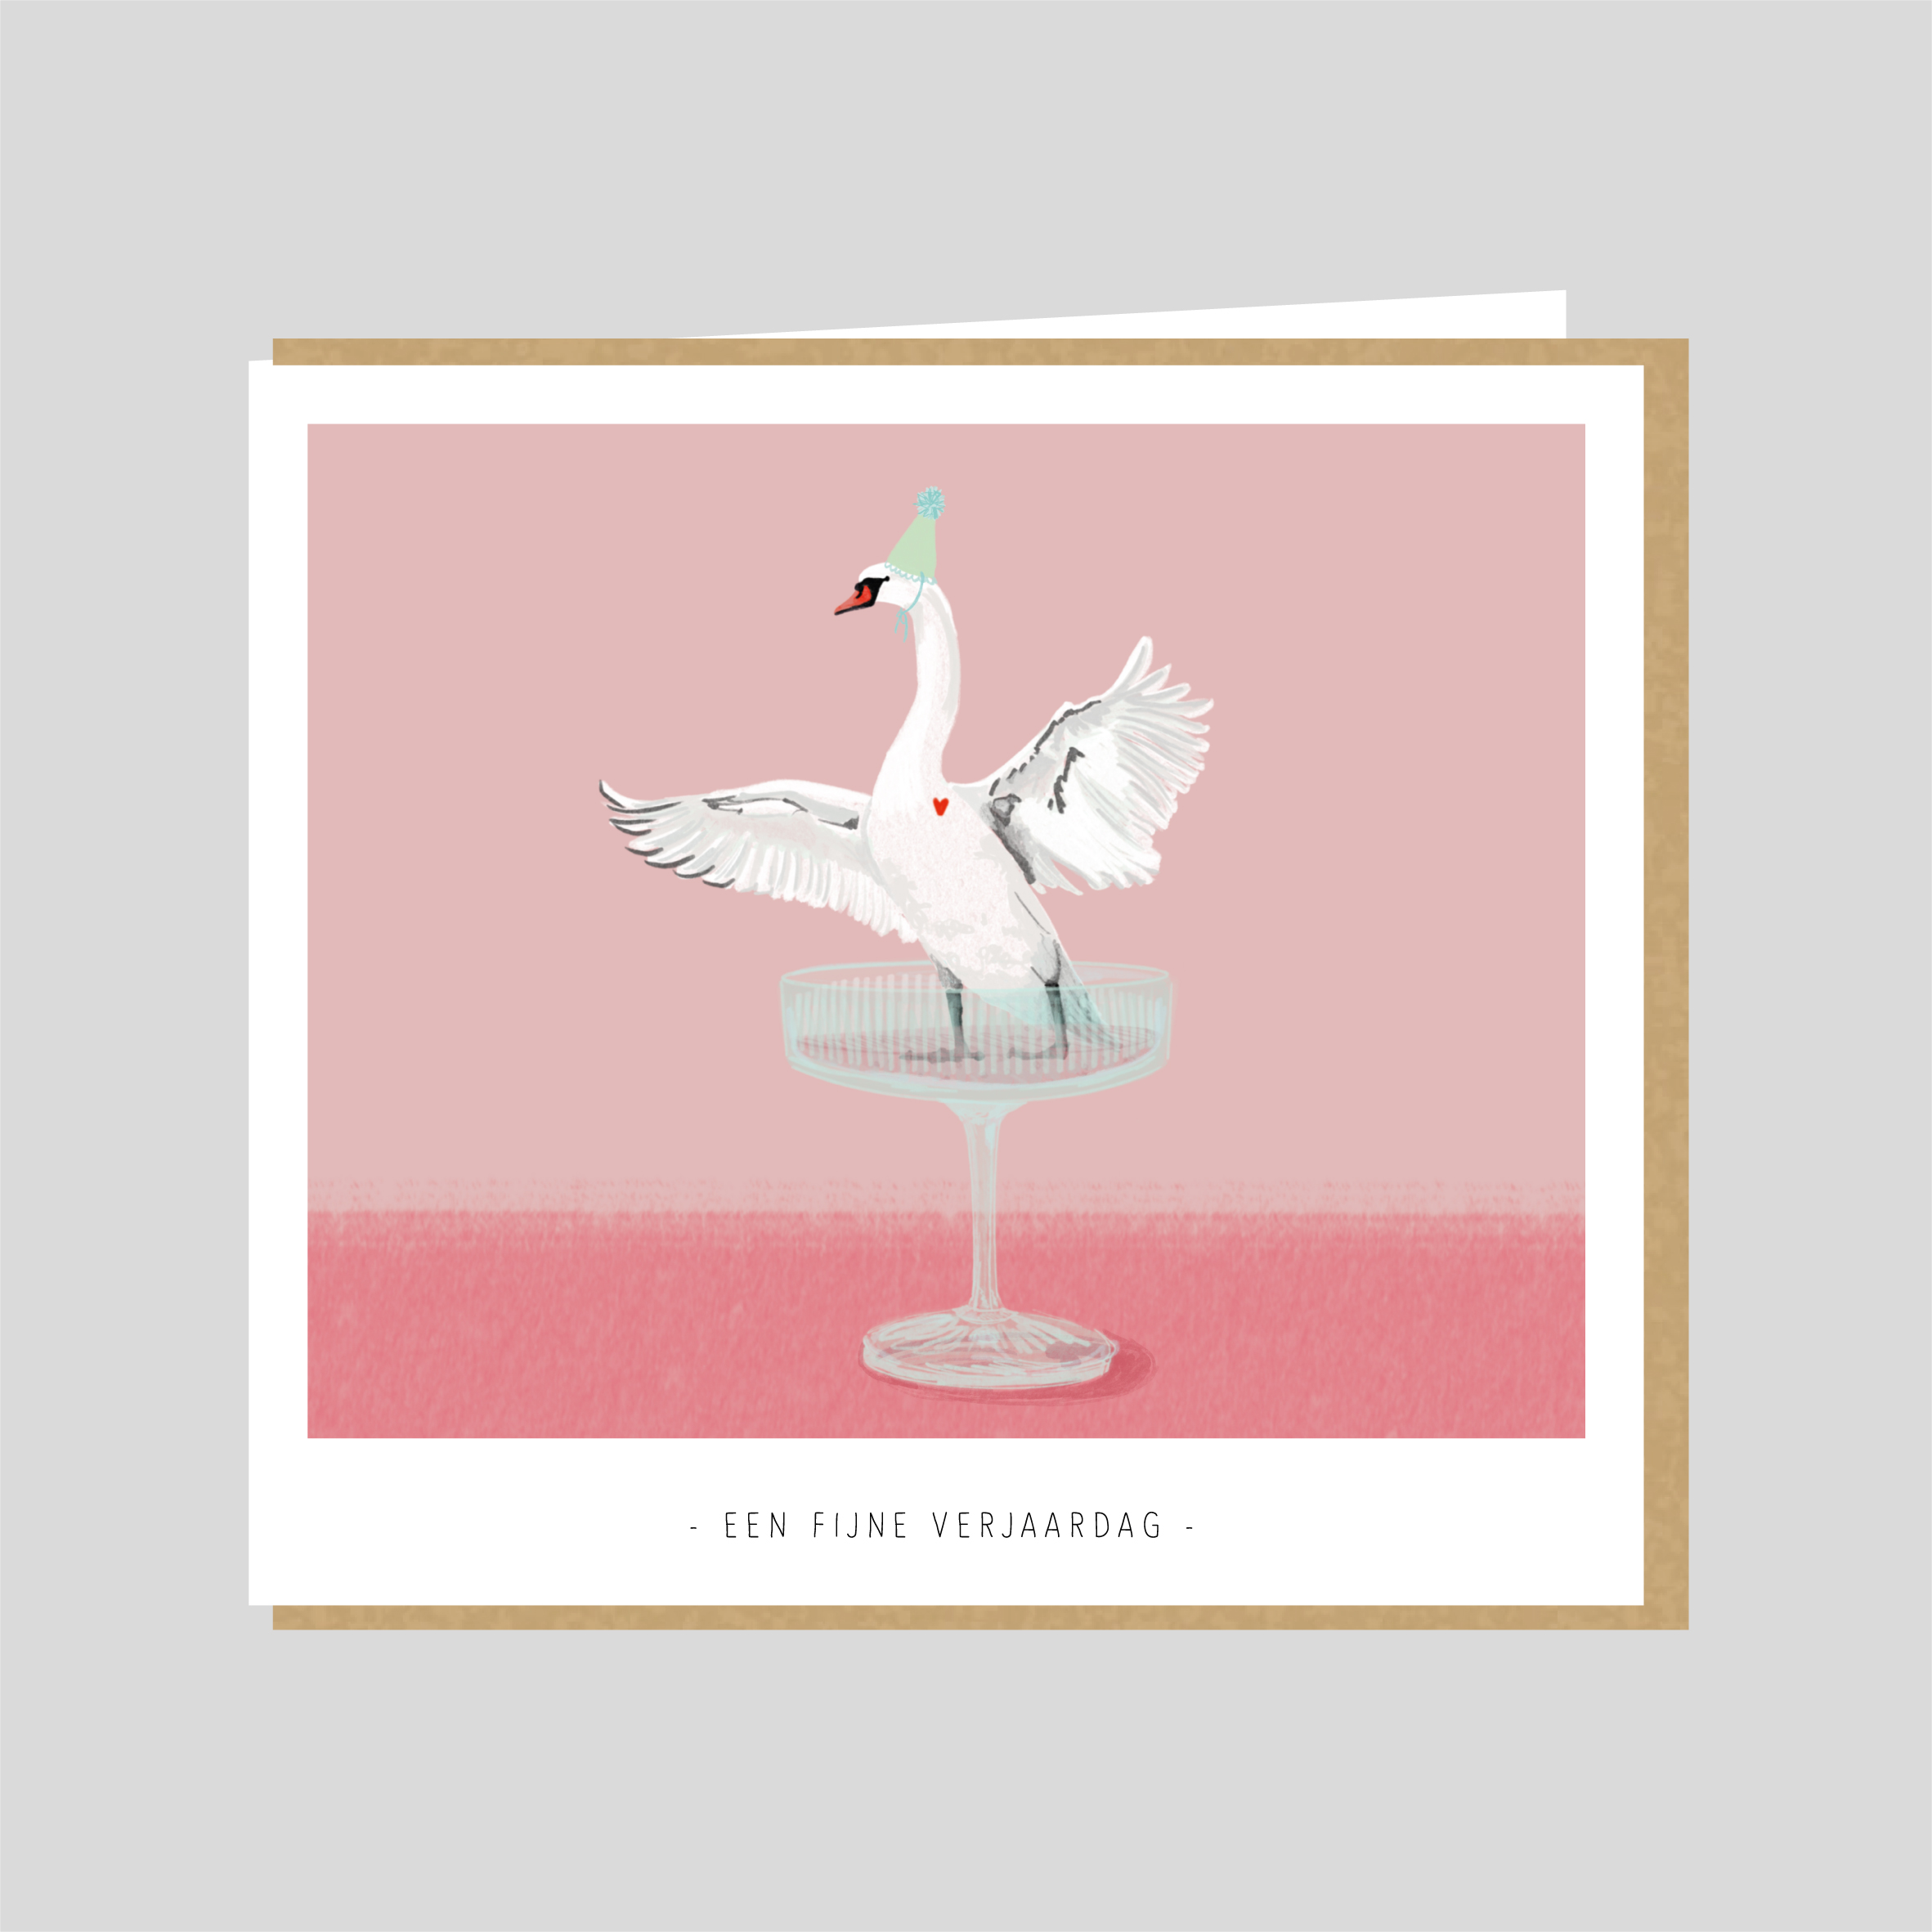 Verjaardagskaart met een zwaan dansend in een glas